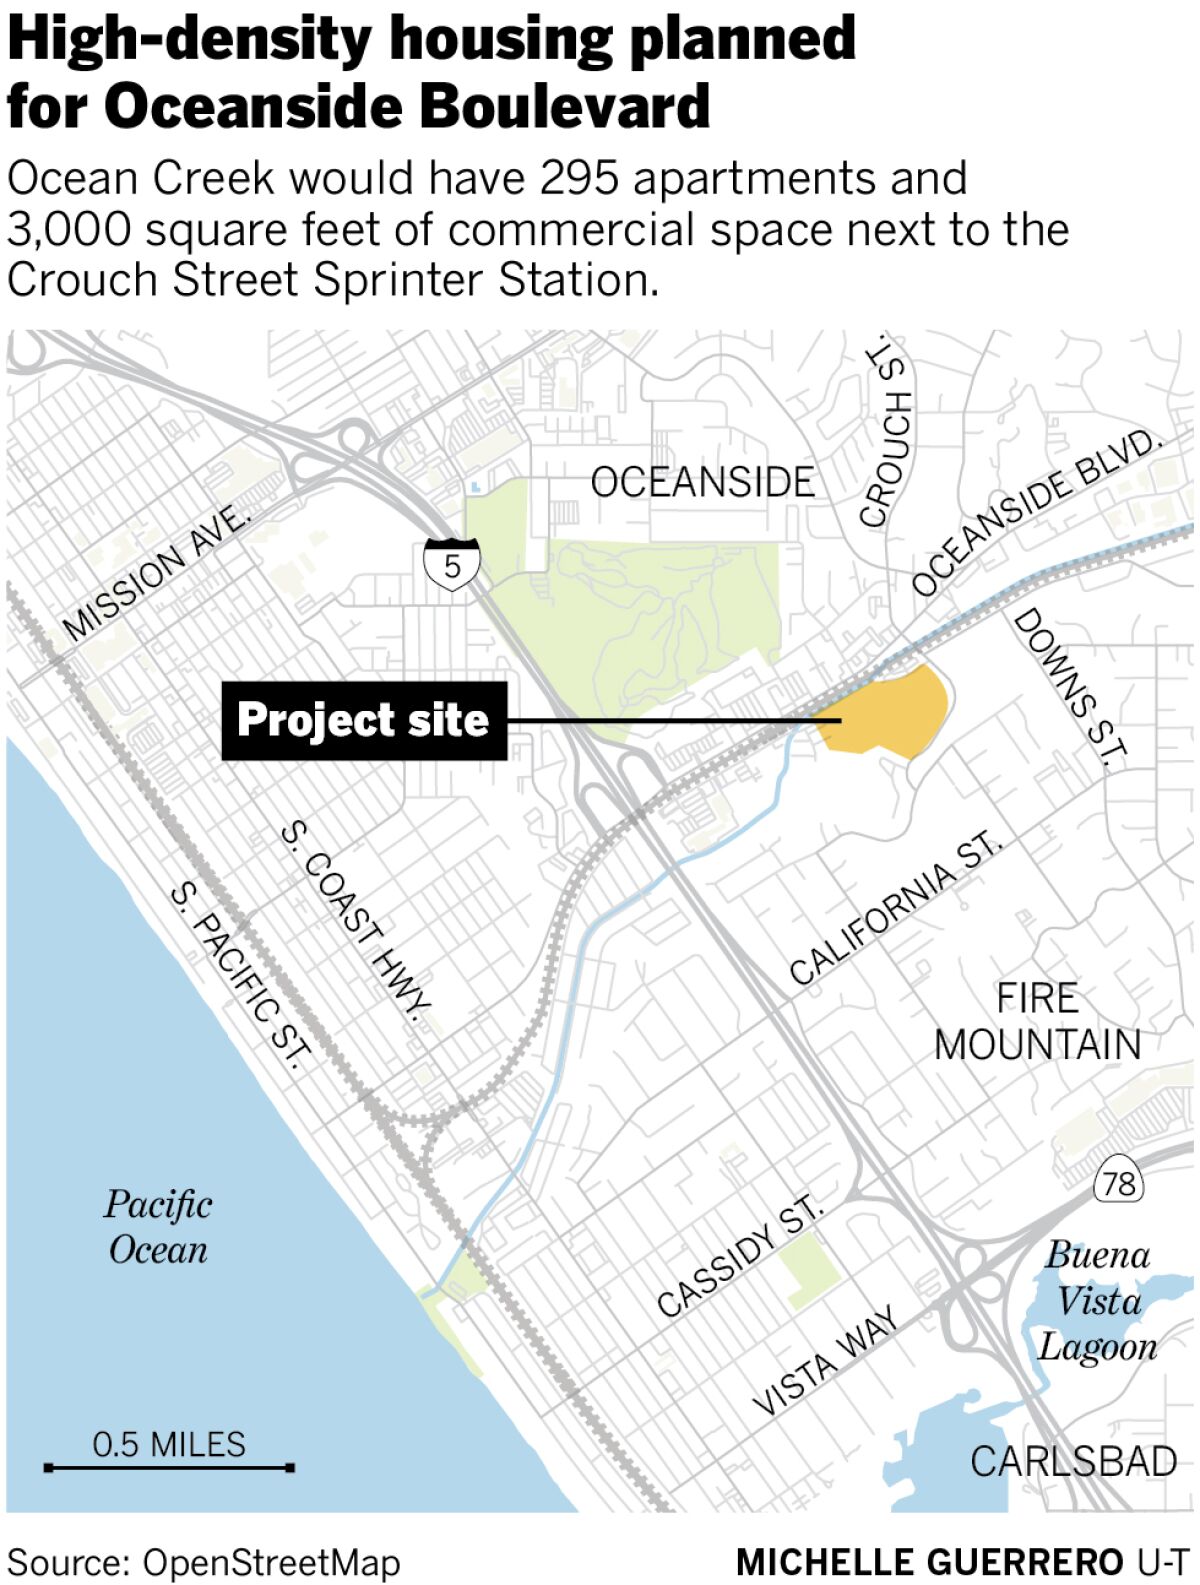 High-density housing planned for Oceanside Boulevard